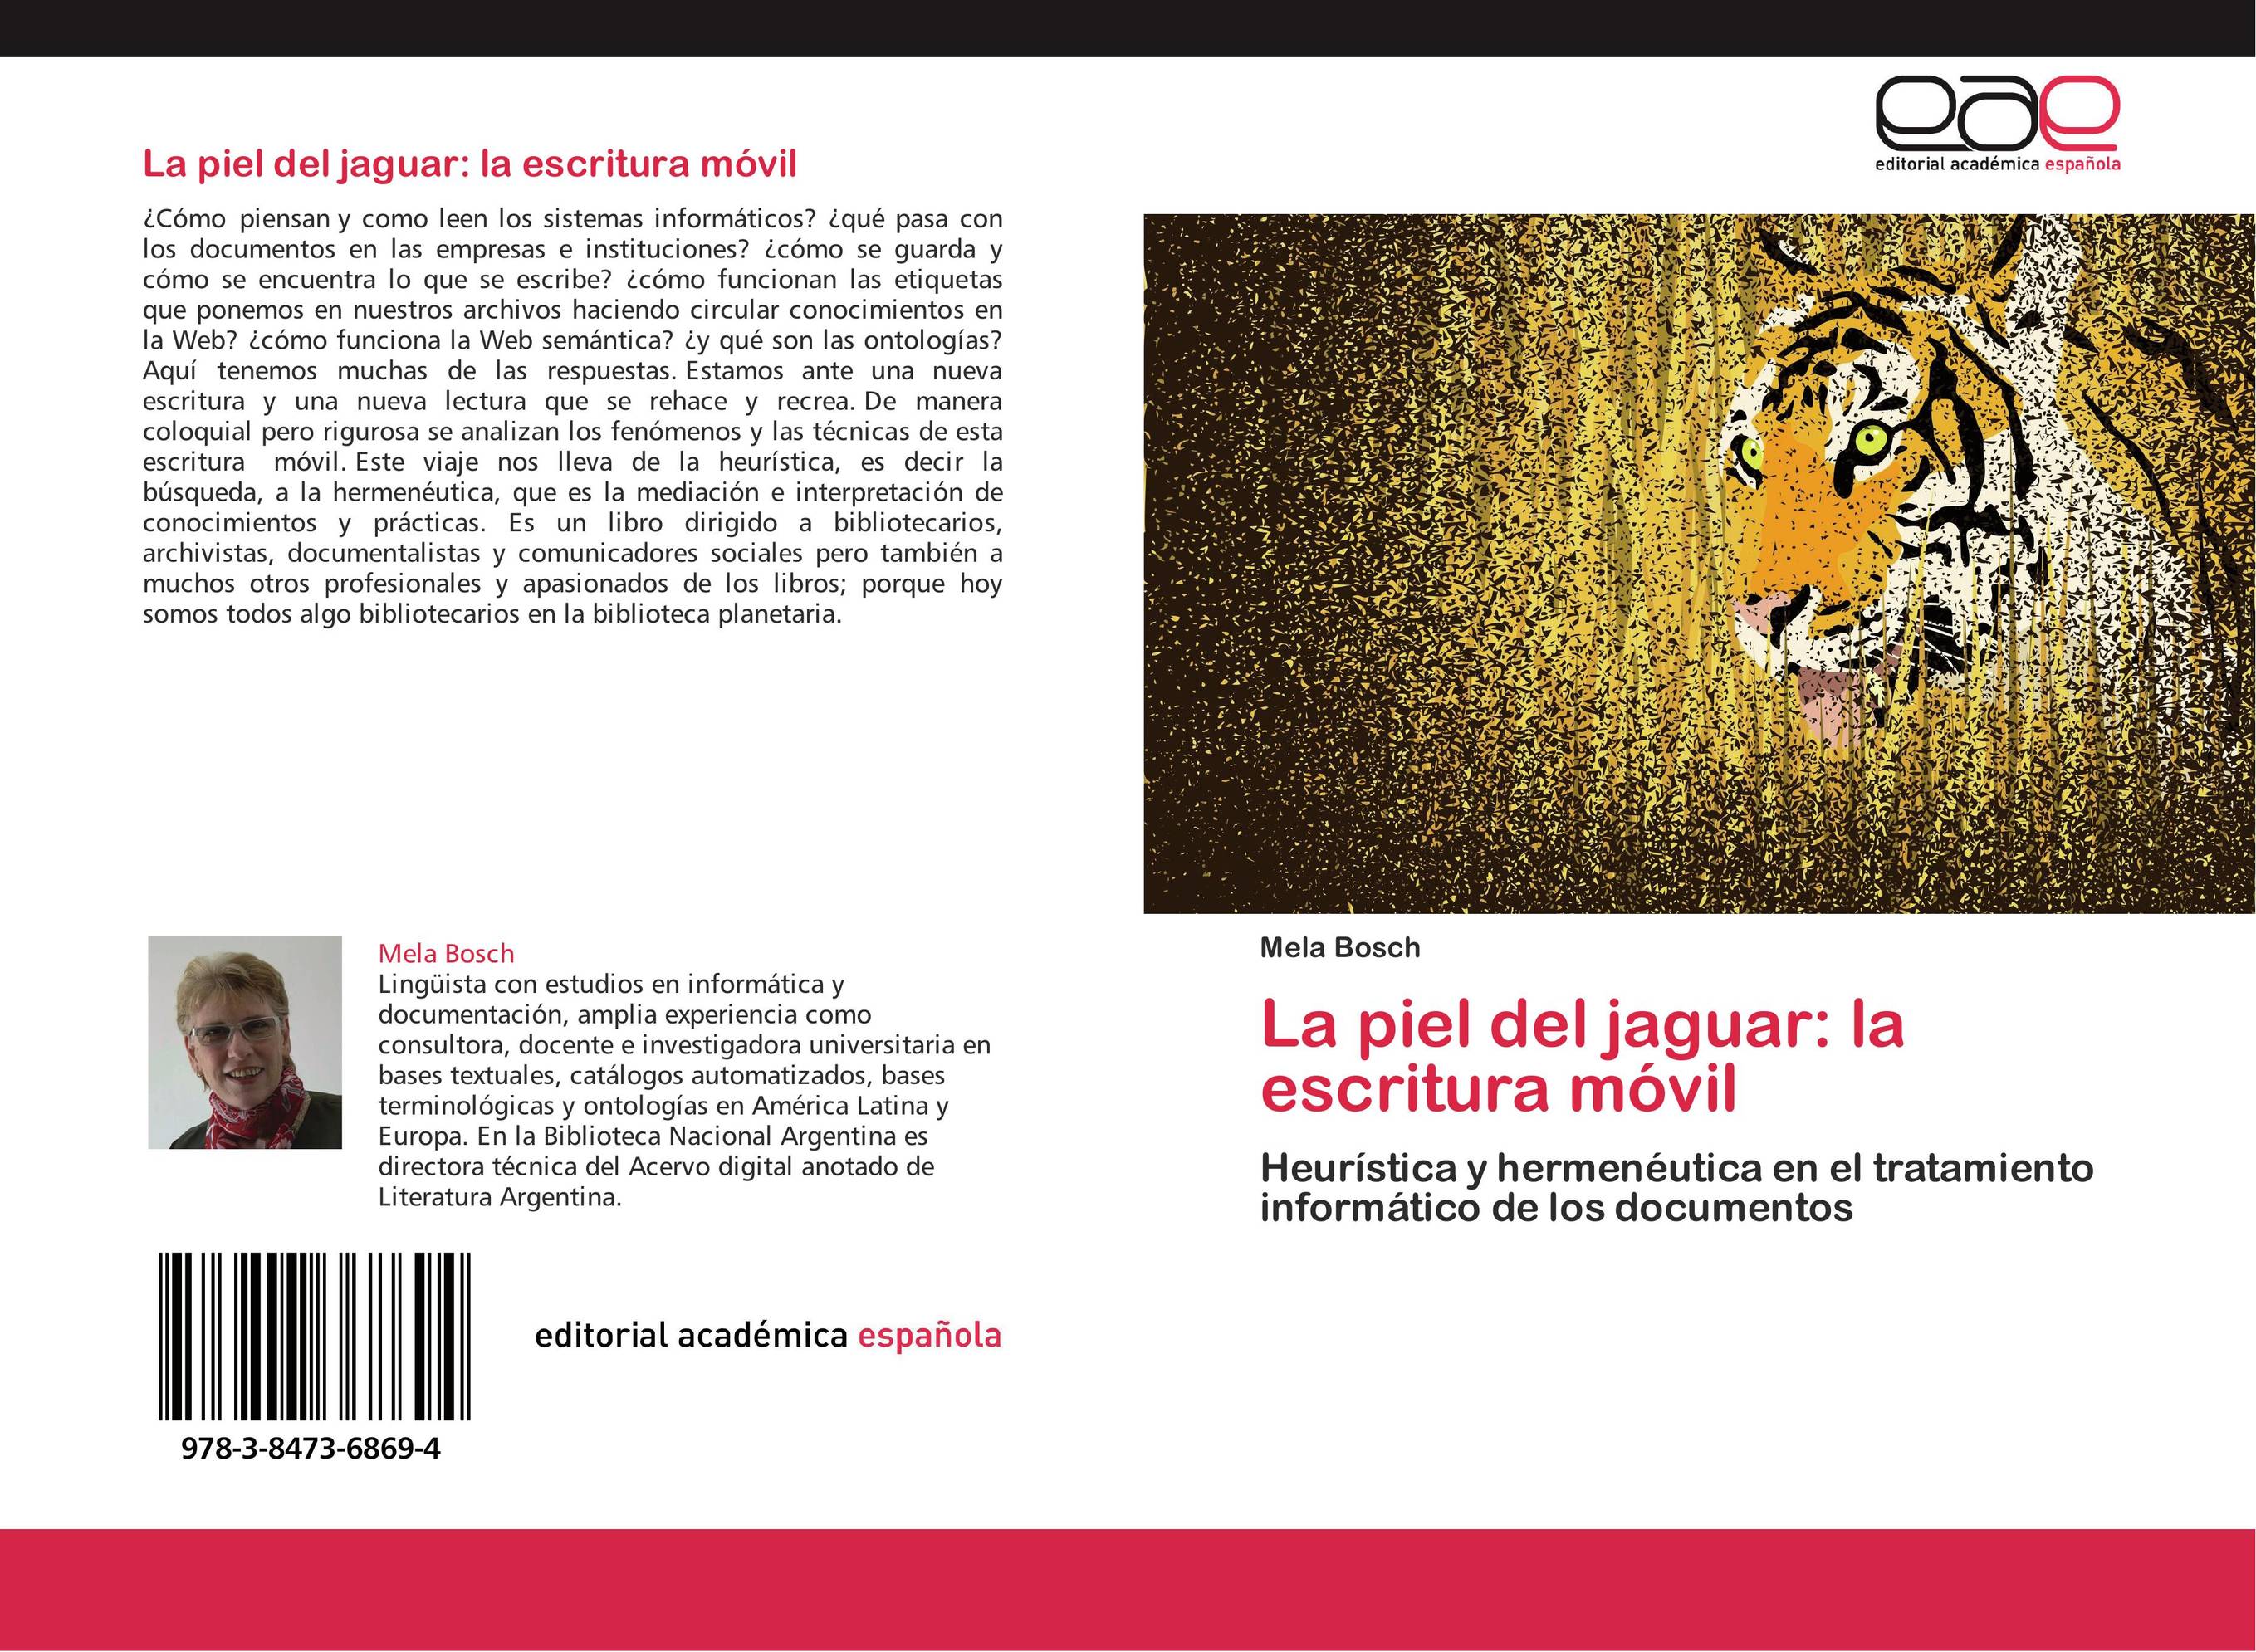 La piel del jaguar: la escritura móvil